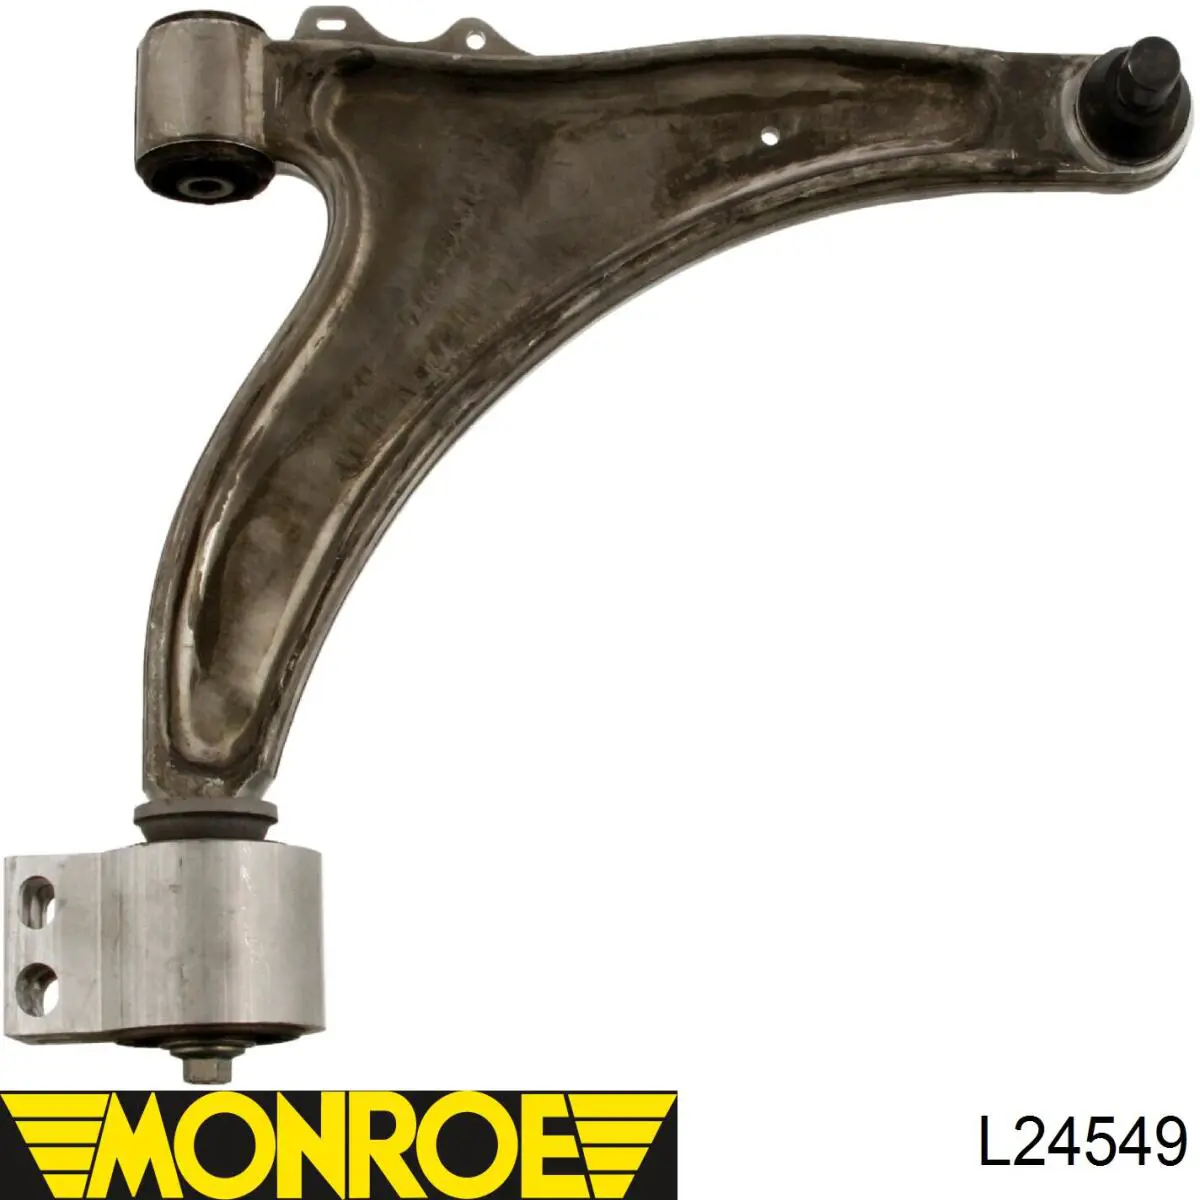 L24549 Monroe barra oscilante, suspensión de ruedas delantera, inferior derecha